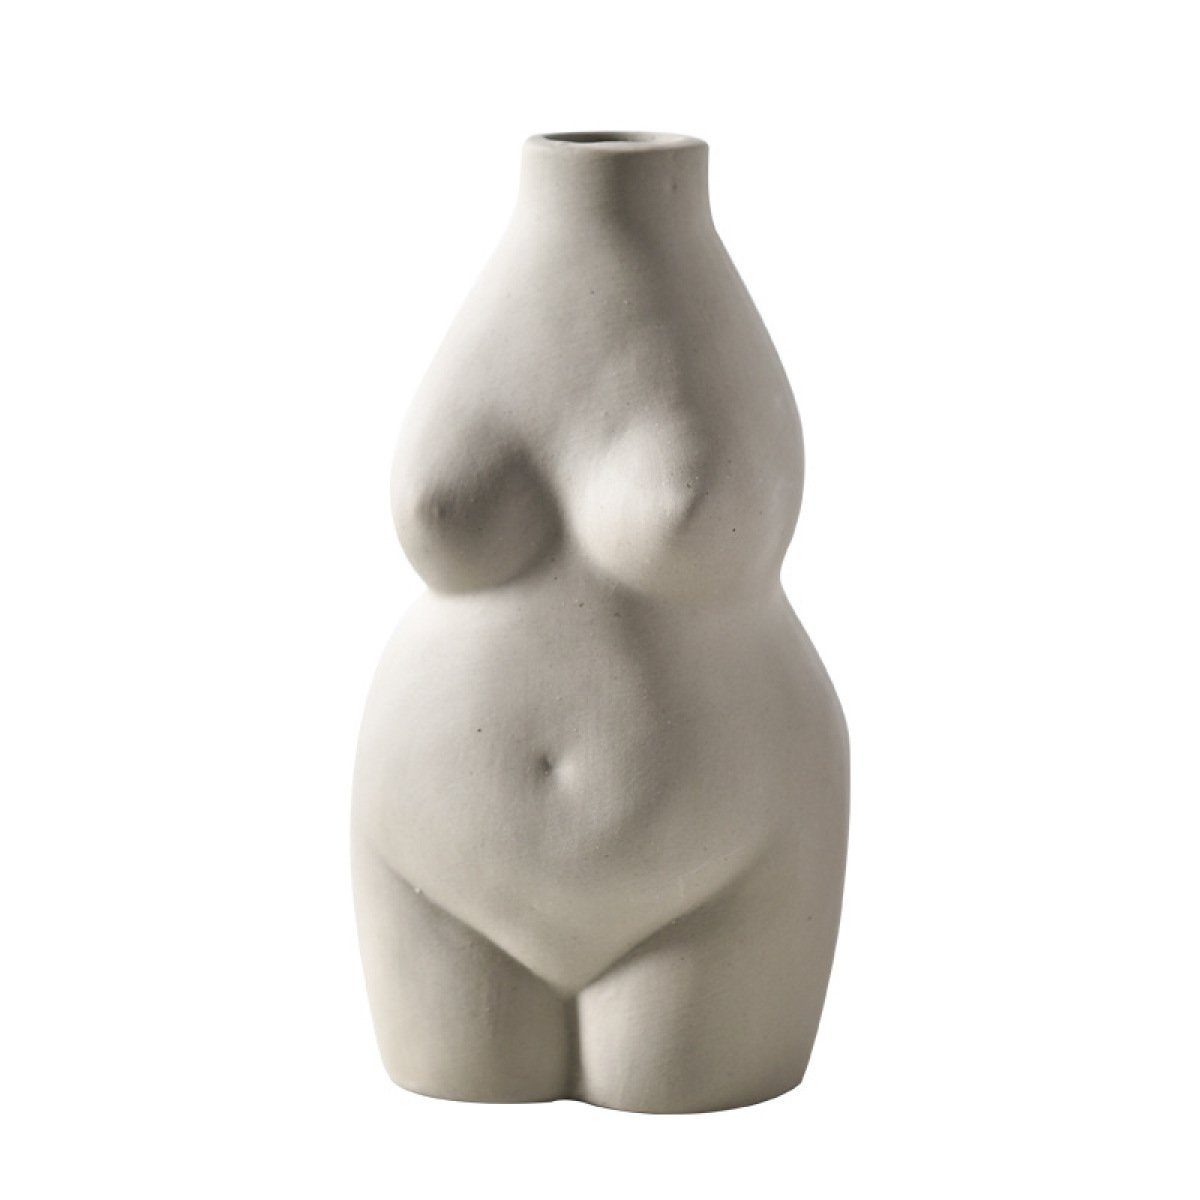 Jormftte Dekovase Weiblich Körper Vase Kunst Design,Keramik Blumentopf Statue,für Deko Grau